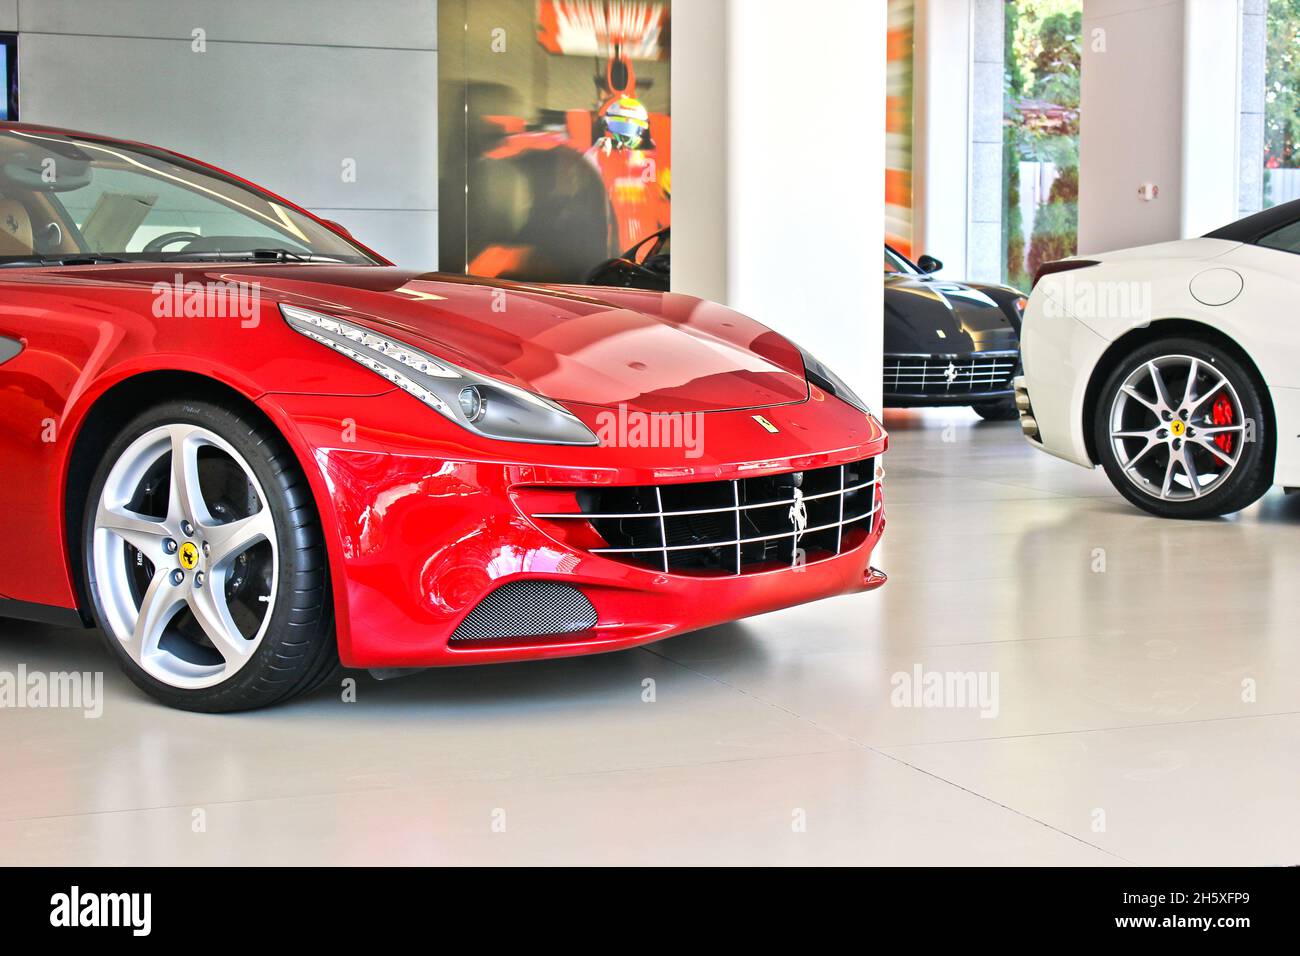 Kiev, Ukraine - August 20, 2011: Red Italian supercar Ferrari FF. Car for sale, new car, for advertising Stock Photo